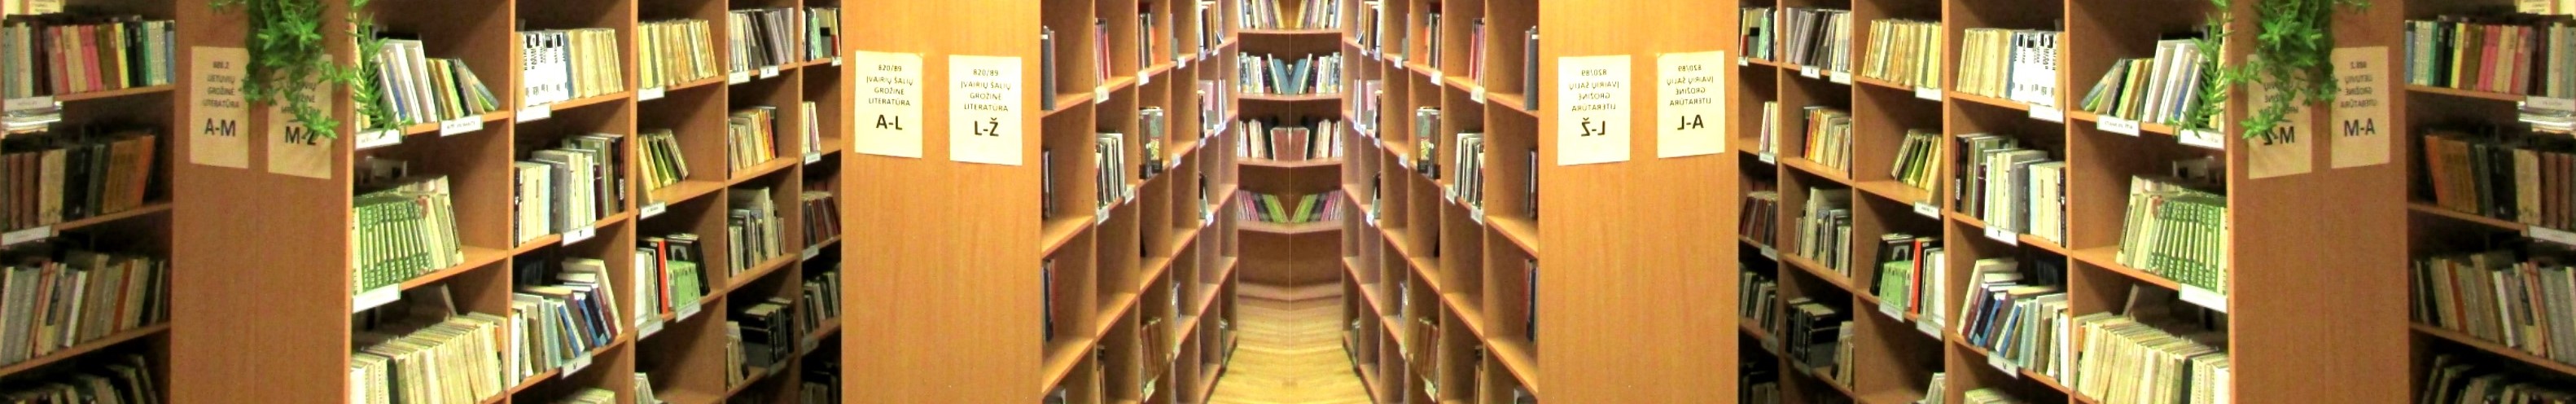 prekybos sistemos biblioteka